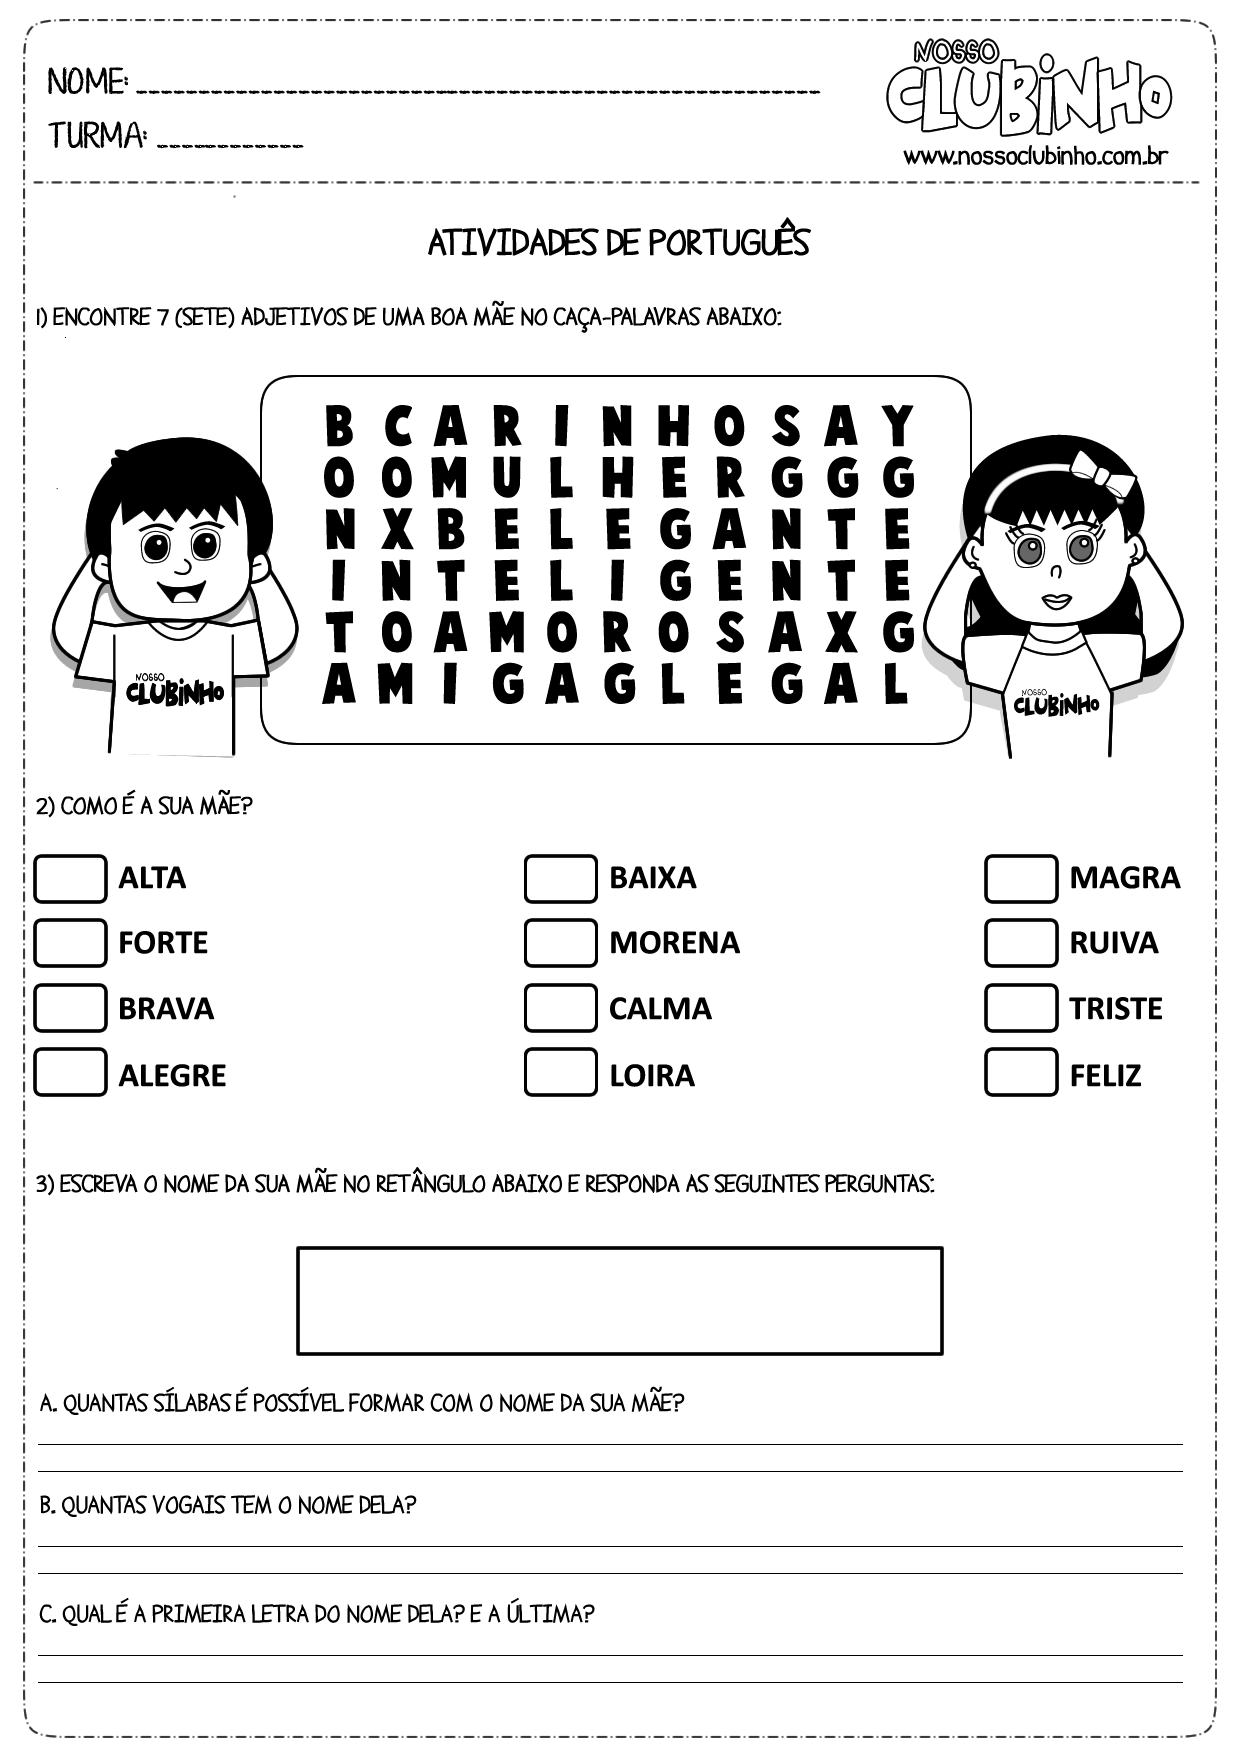 Atividades de Alfabetização: Consoantes e vogais 1  Consoantes e vogais,  Atividades de alfabetização, Atividades letra e